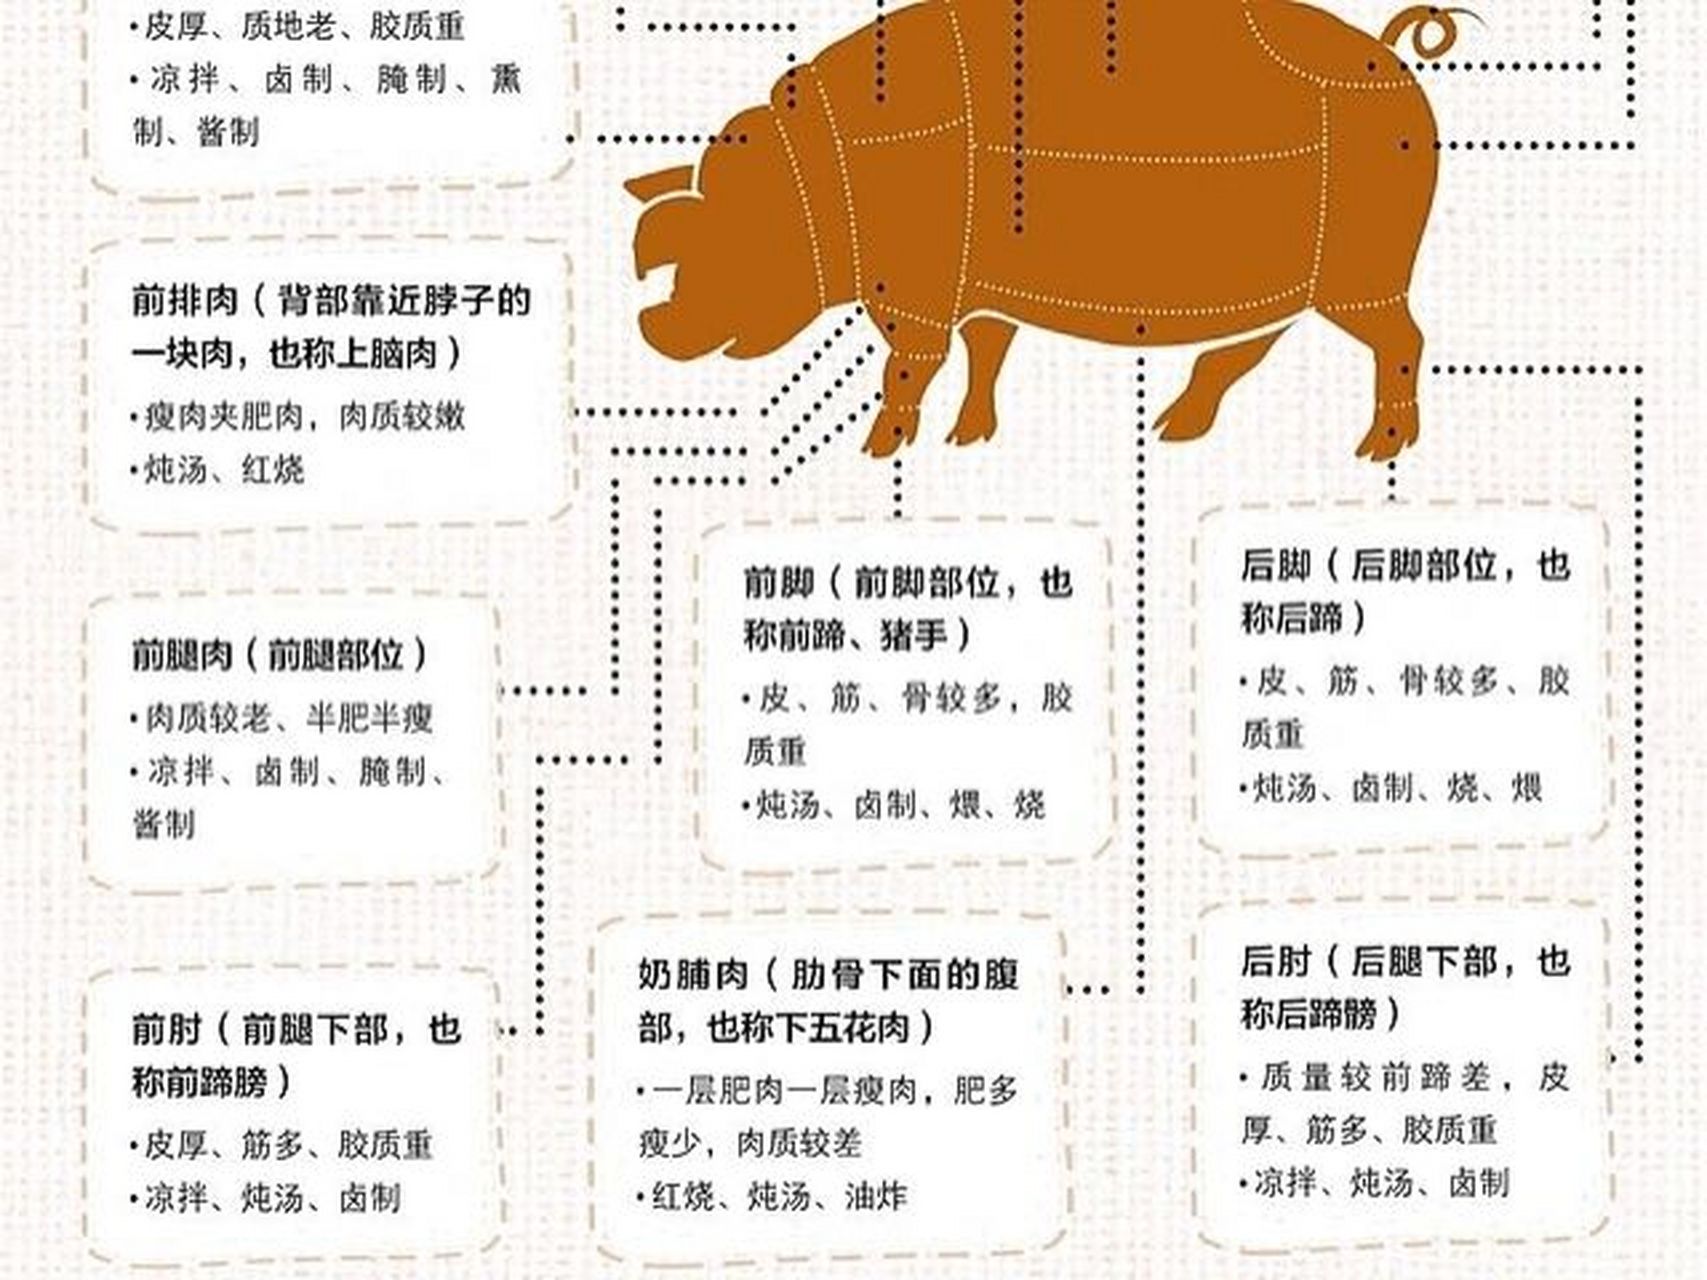 一张图教你认识猪肉各部位及最佳吃法73 虽然猪的部位比较多,但常用